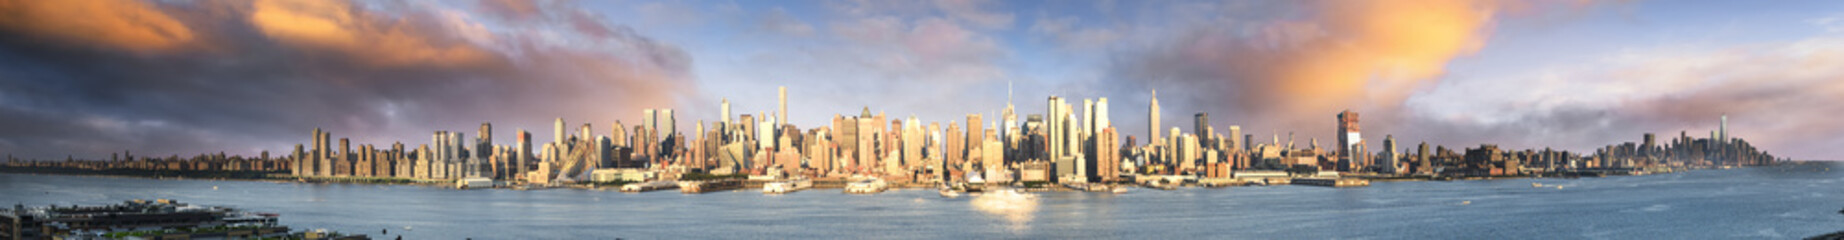 Fototapete - New York panoramic